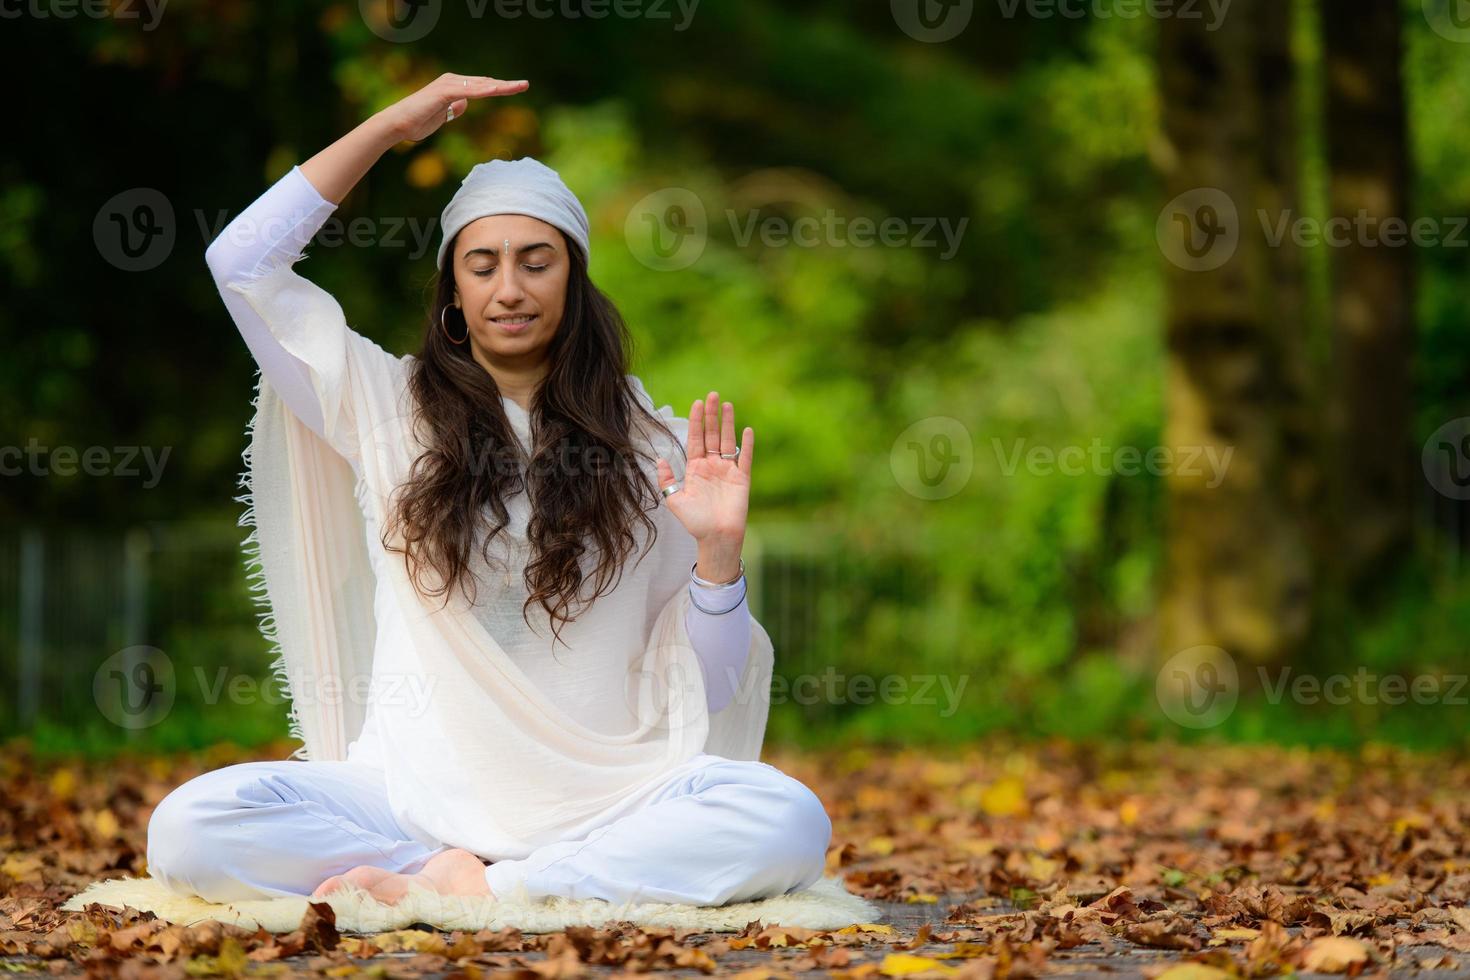 yoga-instructeur oefent oefeningen in het park in de herfst foto